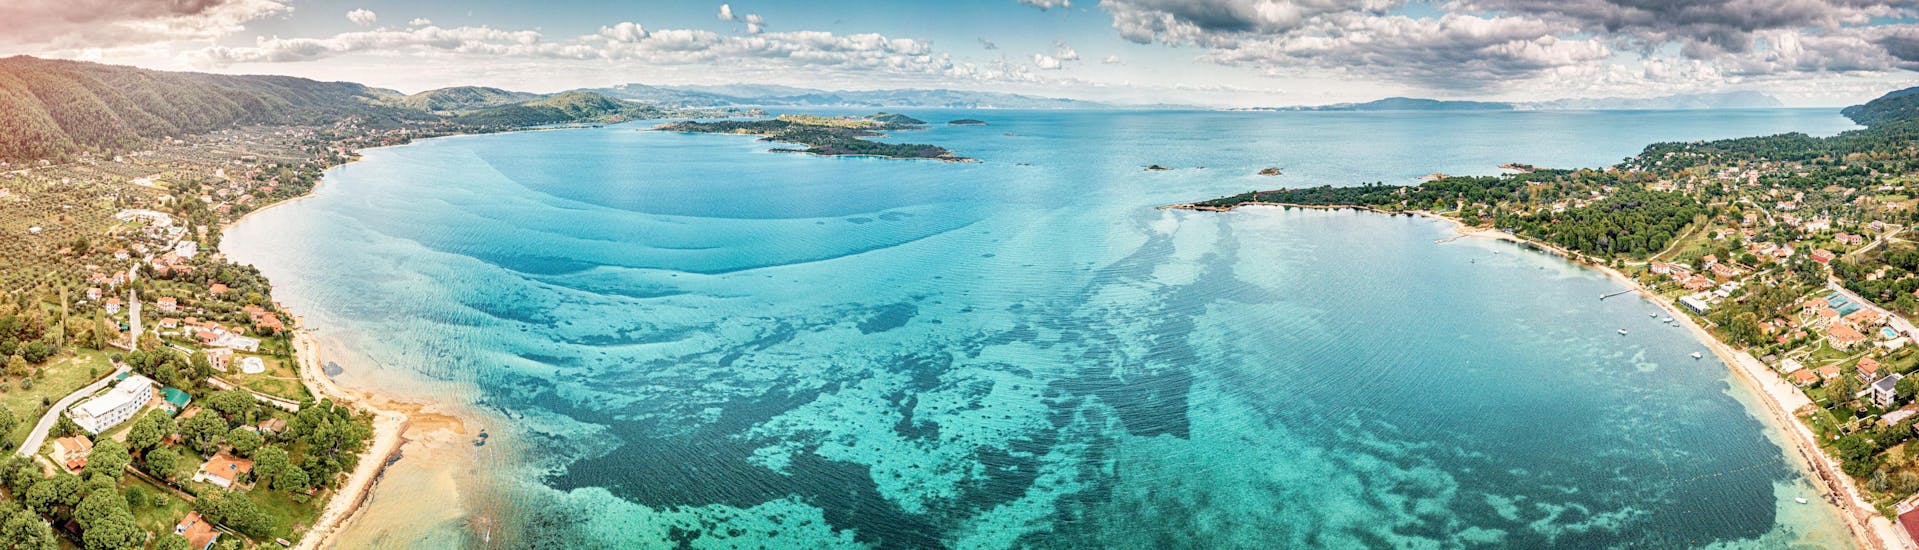 Vista panorámica aérea de la laguna azul celeste y la bahía paradisíaca con majestuosos dibujos sobre una plataforma marina.